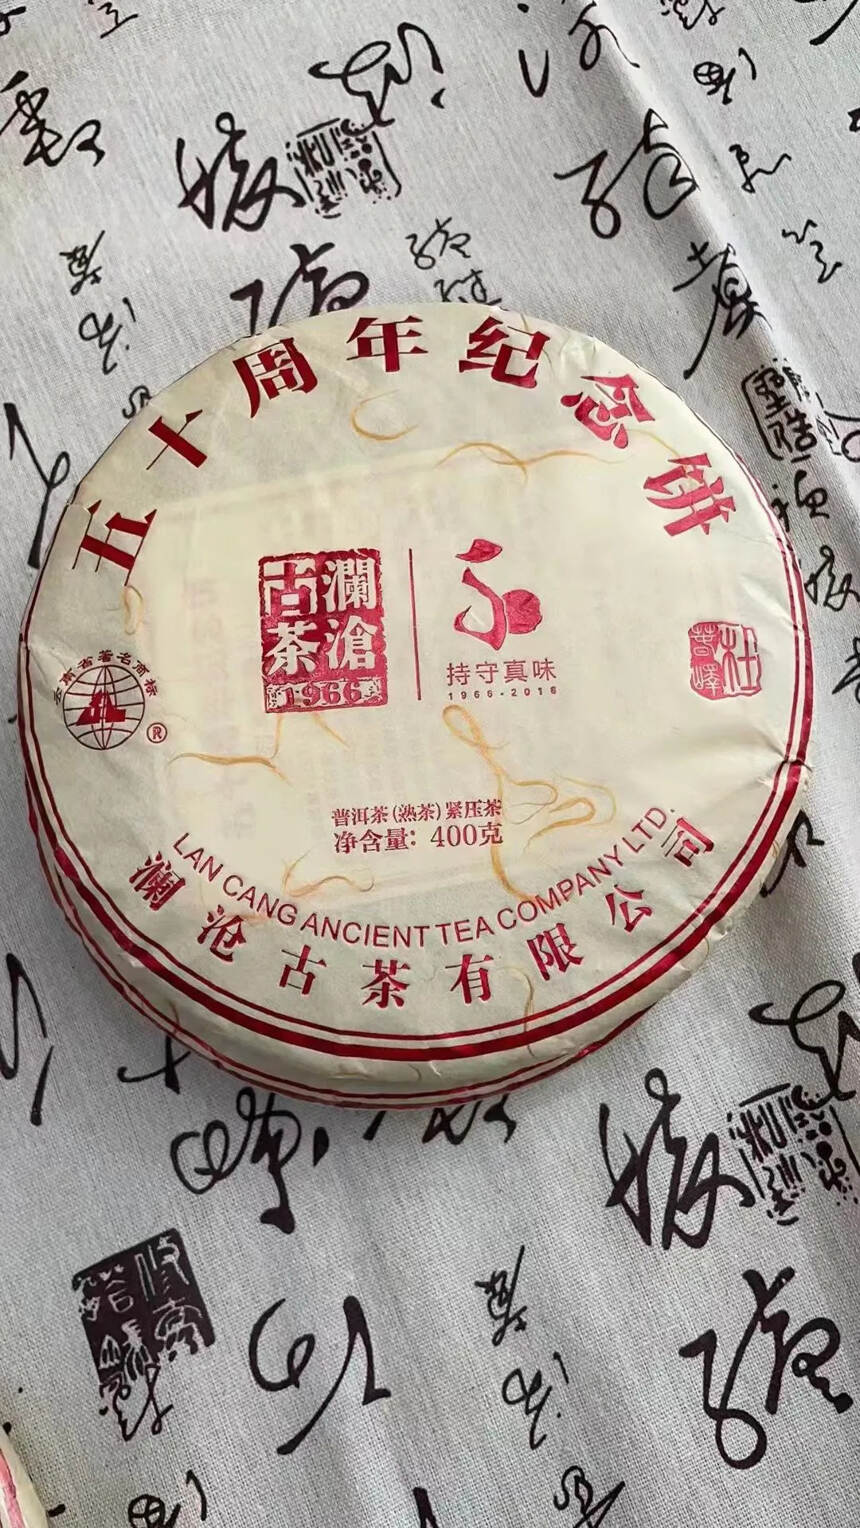 澜沧古茶2016年五十周年纪念饼熟茶
古树原料，40